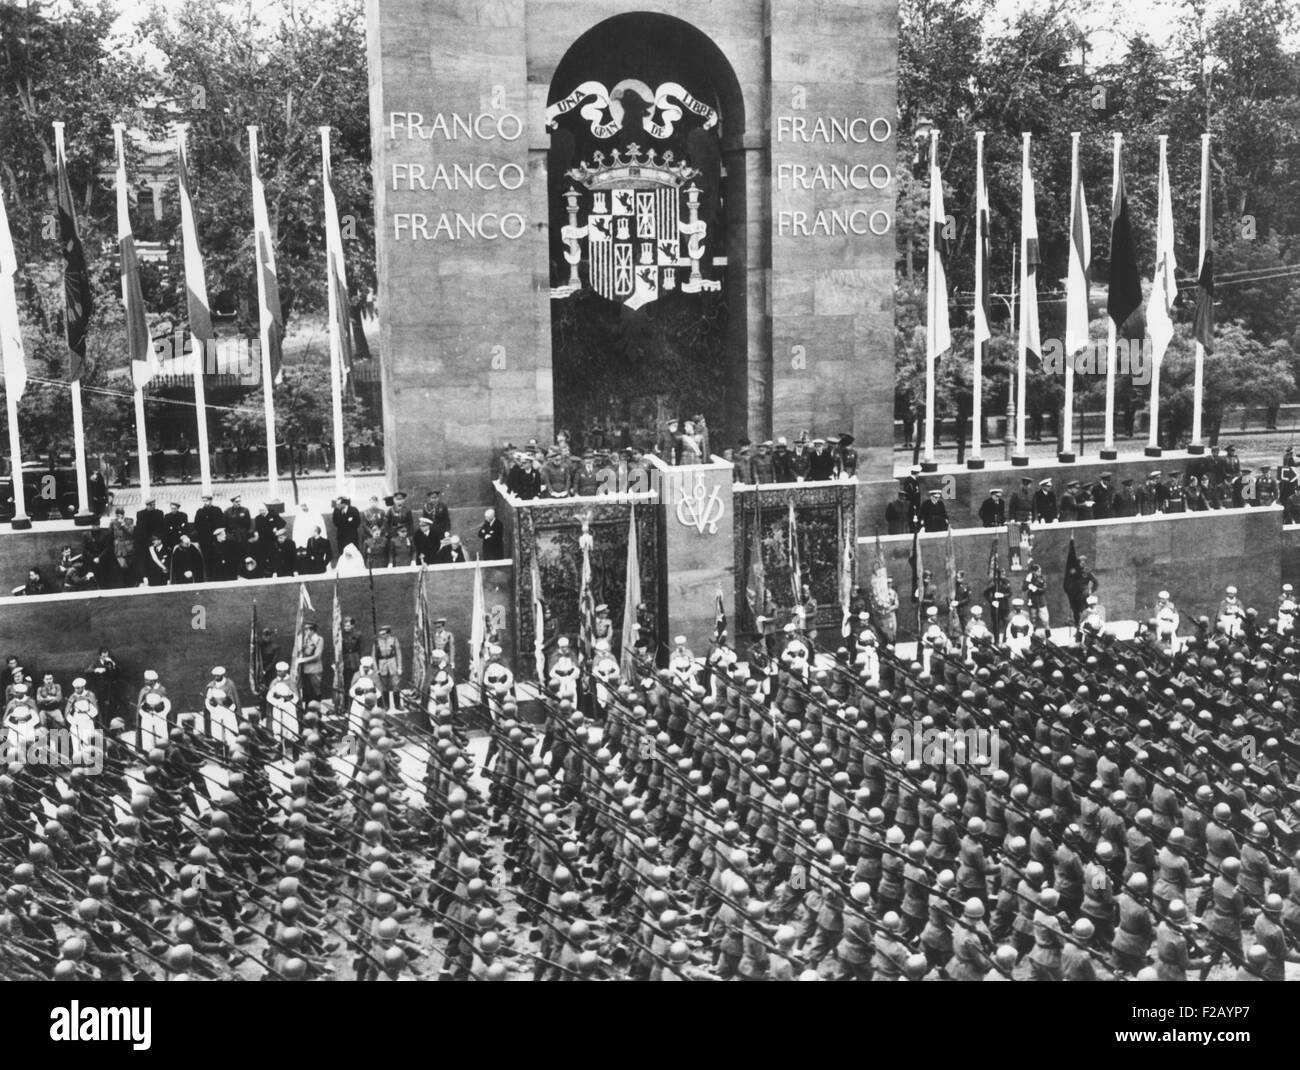 Francisco Franco salue les troupes italiennes défilant dans son énorme revue de la victoire à Madrid. 27 mai, 1939. Il a célébré la défaite des "républicains" dans la guerre civile espagnole sous un arc de triomphe décoré avec son nom et d'emblèmes. CSU (2015  9 708) Banque D'Images